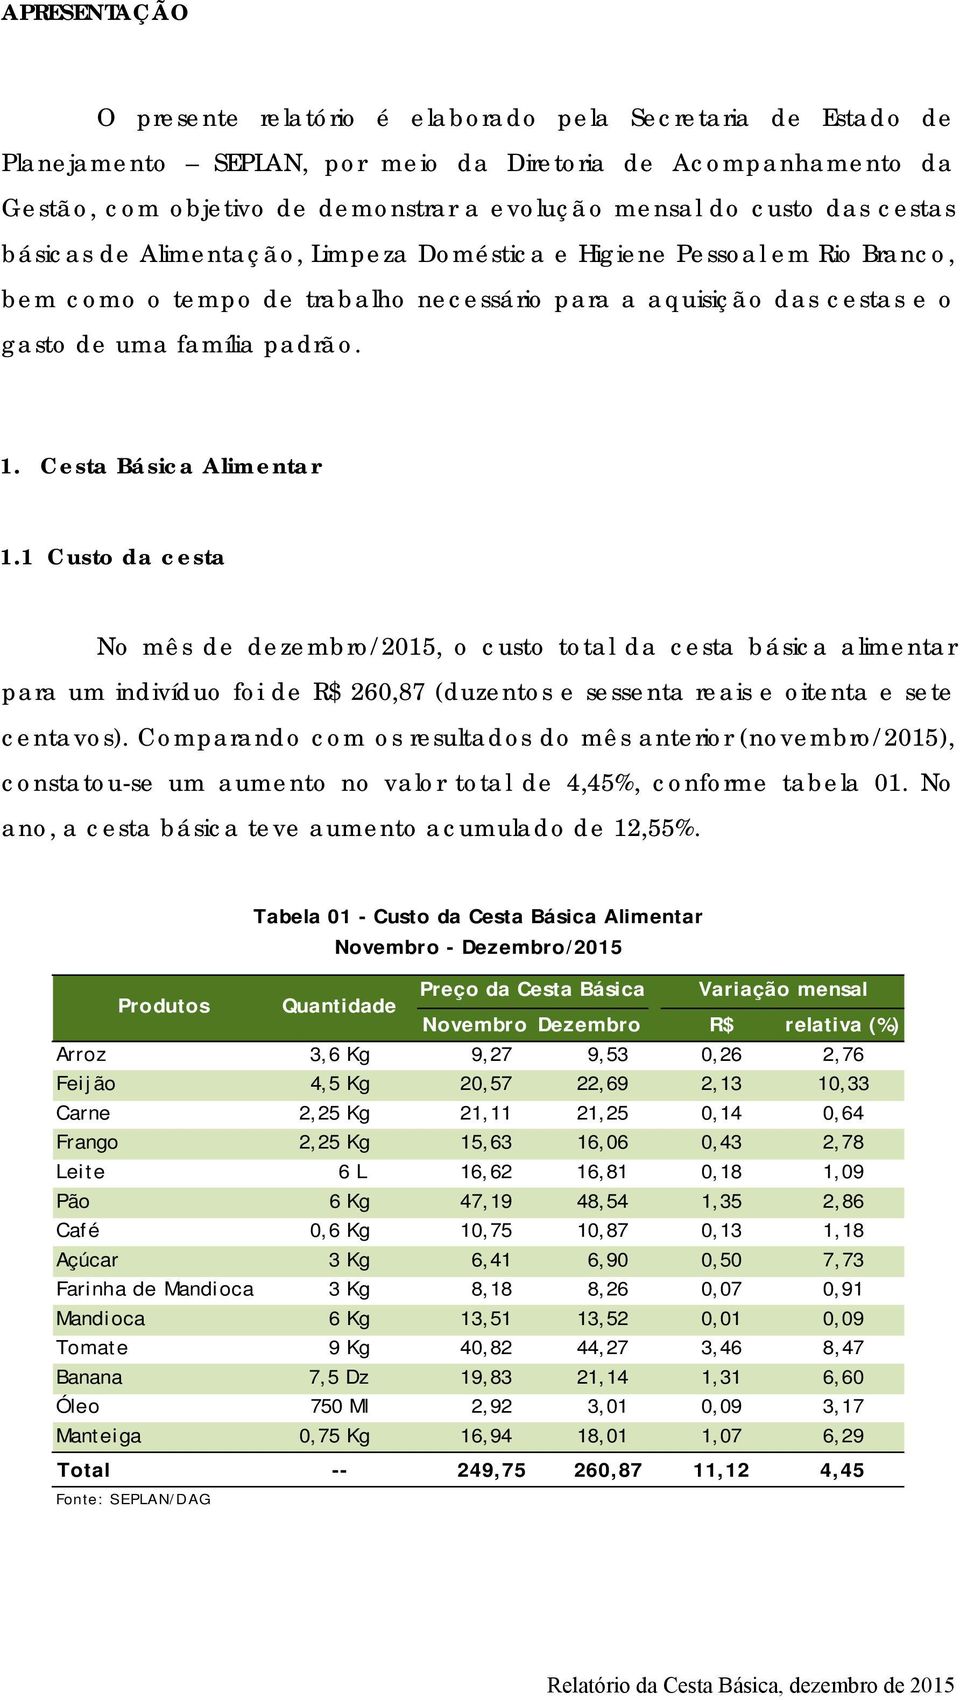 Cesta Básica Alimentar 1.1 Custo da cesta No mês de dezembro/2015, o custo total da cesta básica alimentar para um indivíduo foi de R$ 260,87 (duzentos e sessenta reais e oitenta e sete centavos).